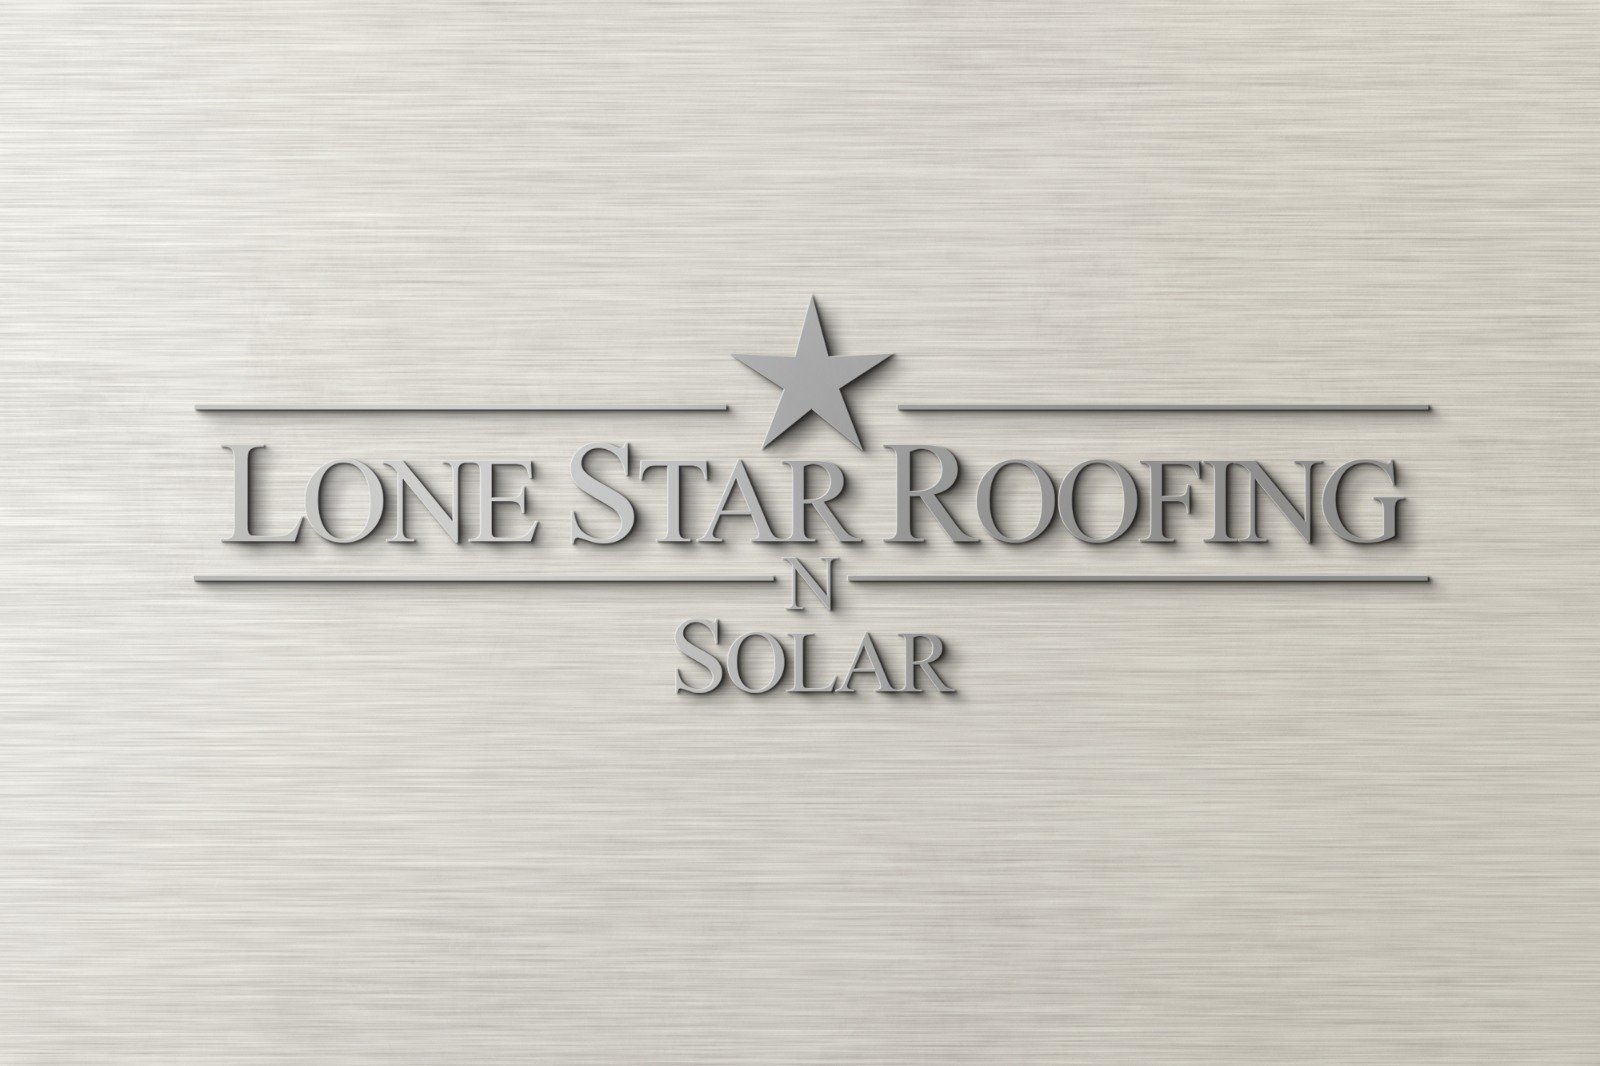 Lone Star Roofing N Solar Logo